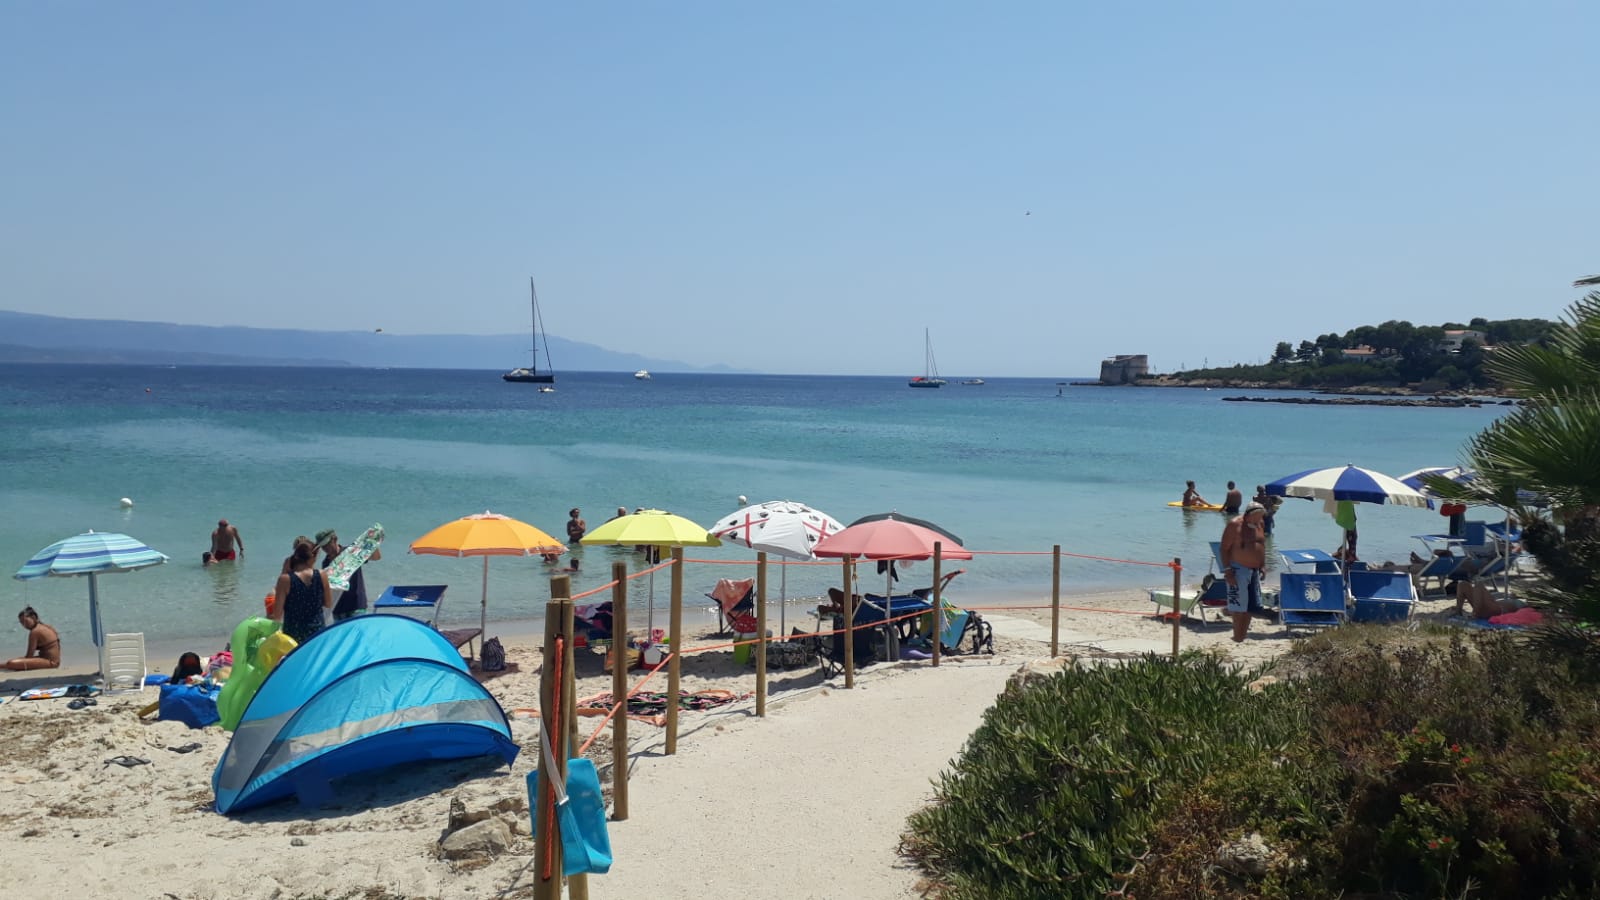 Photo of Lazzaretto Beach beach resort area